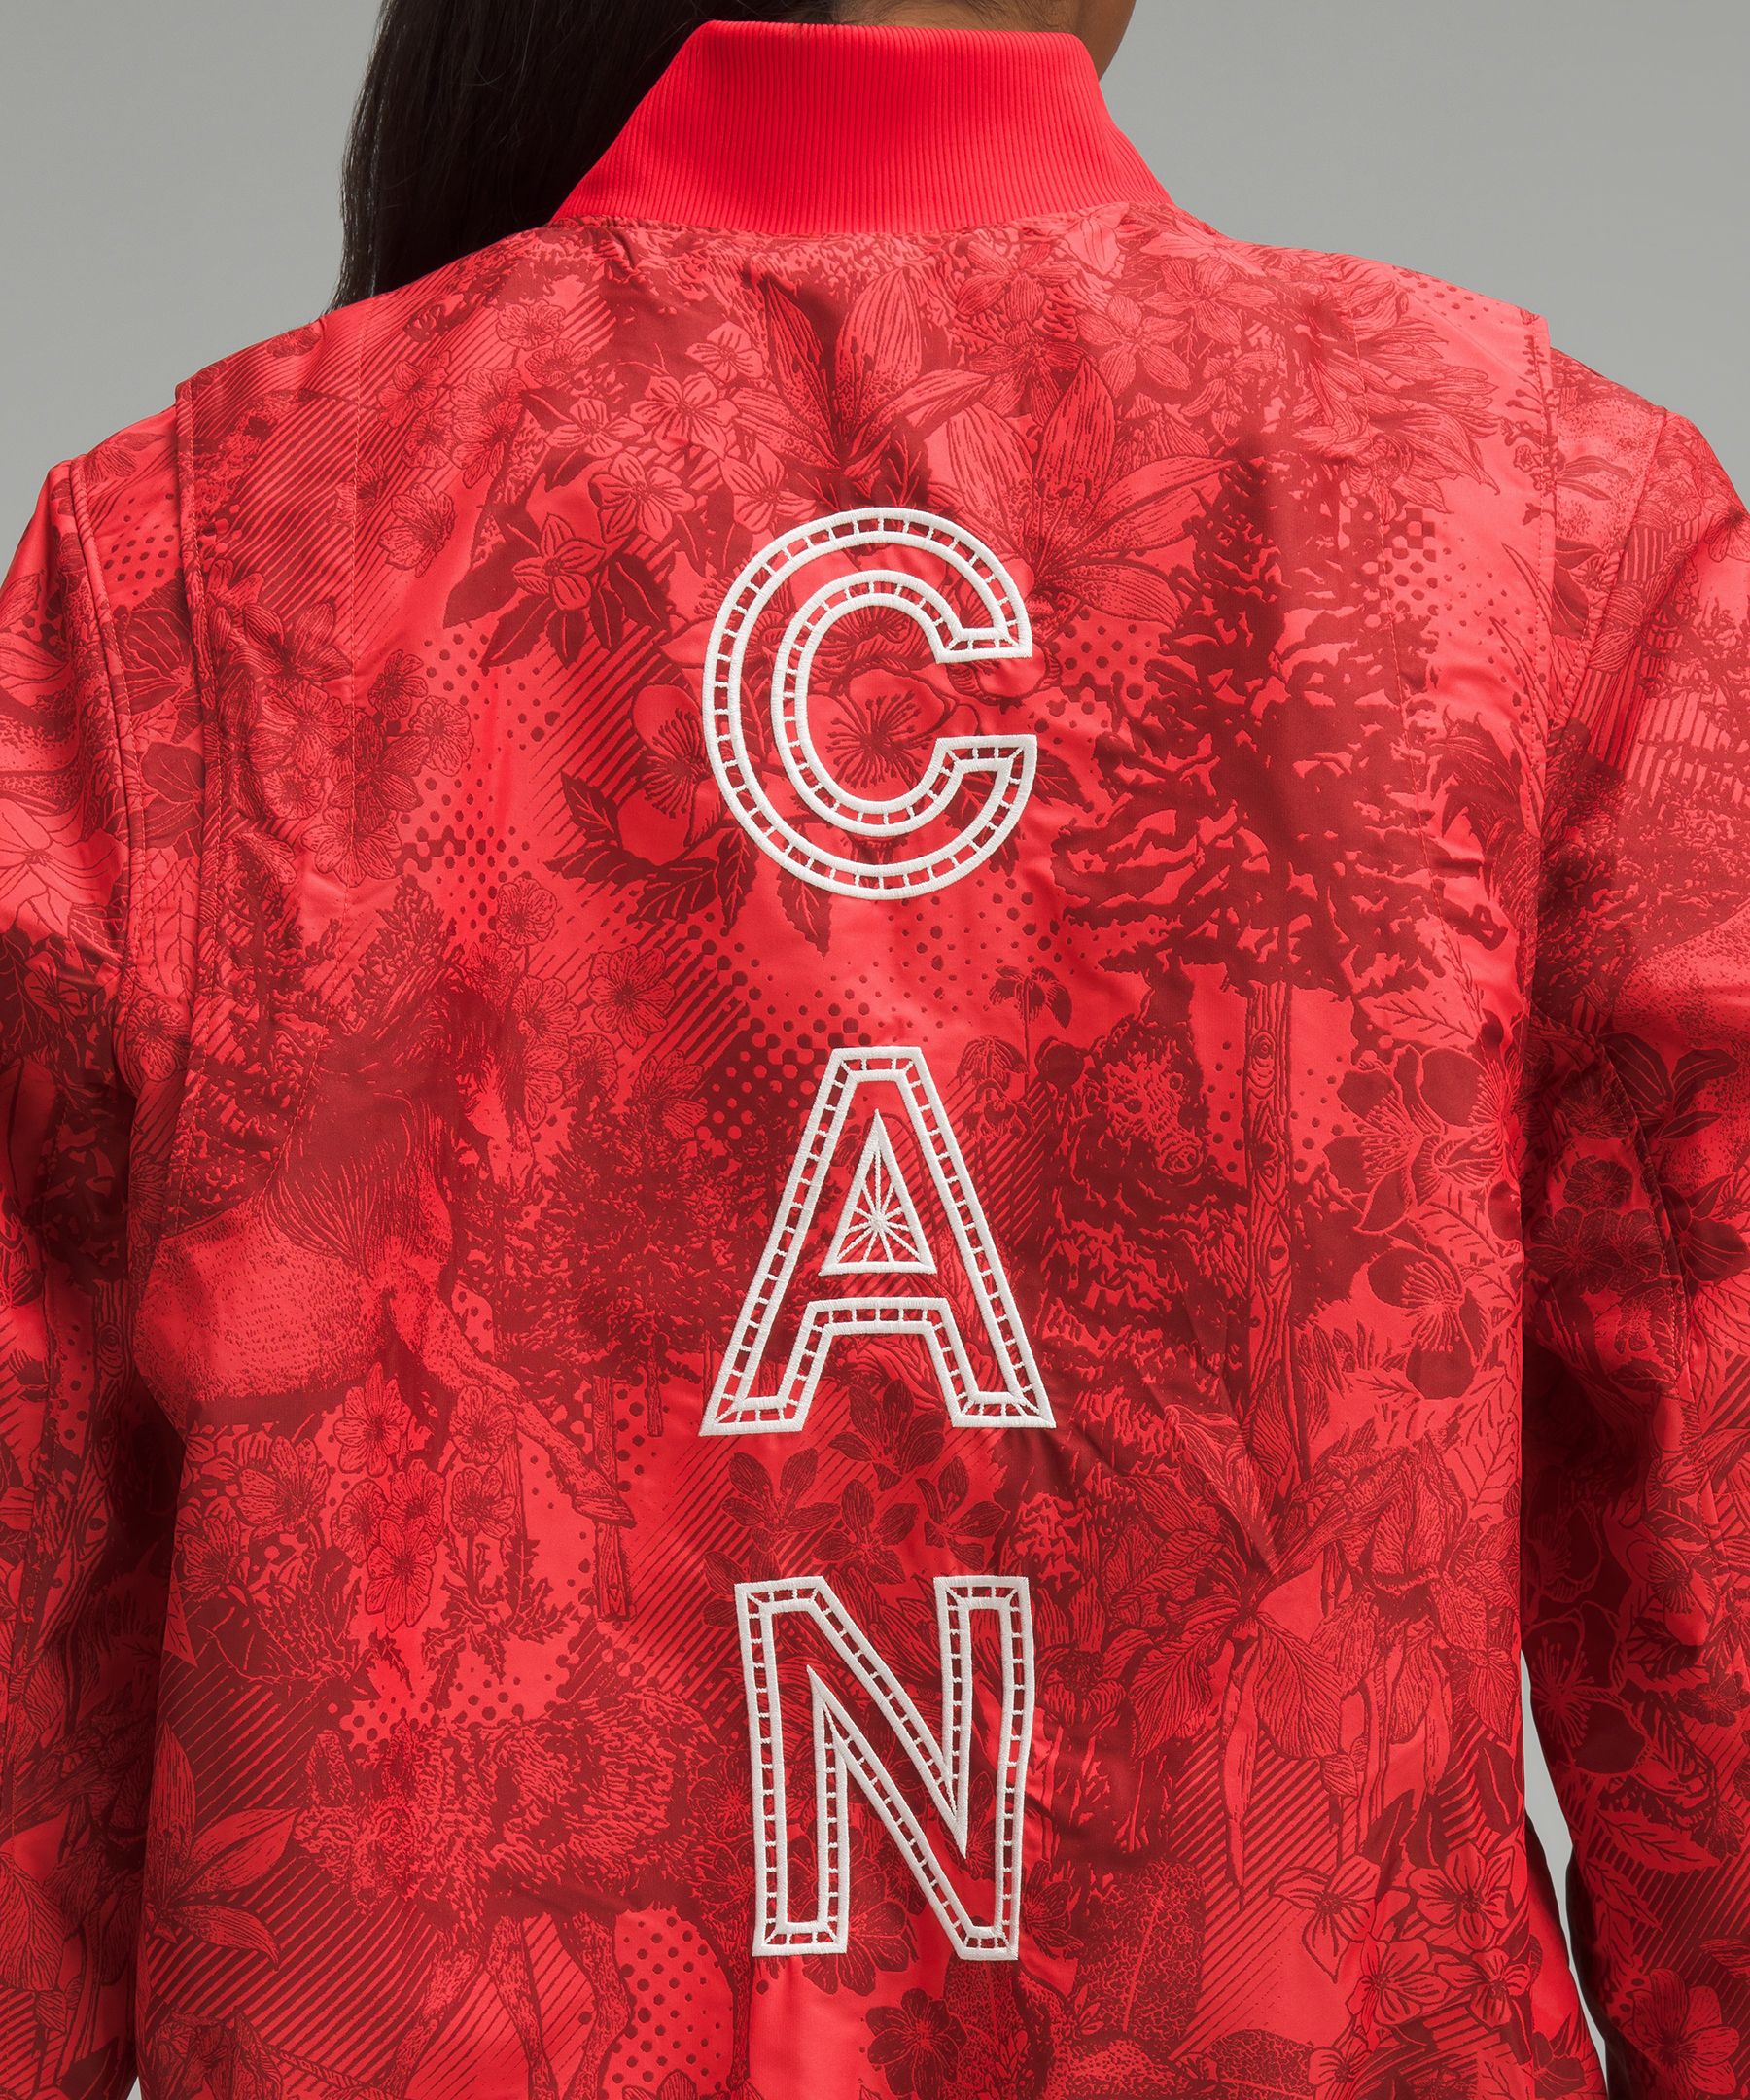 Team Canada Vented Jacquard Bomber Jacket *CPC Logo | Women's Coats & Jackets